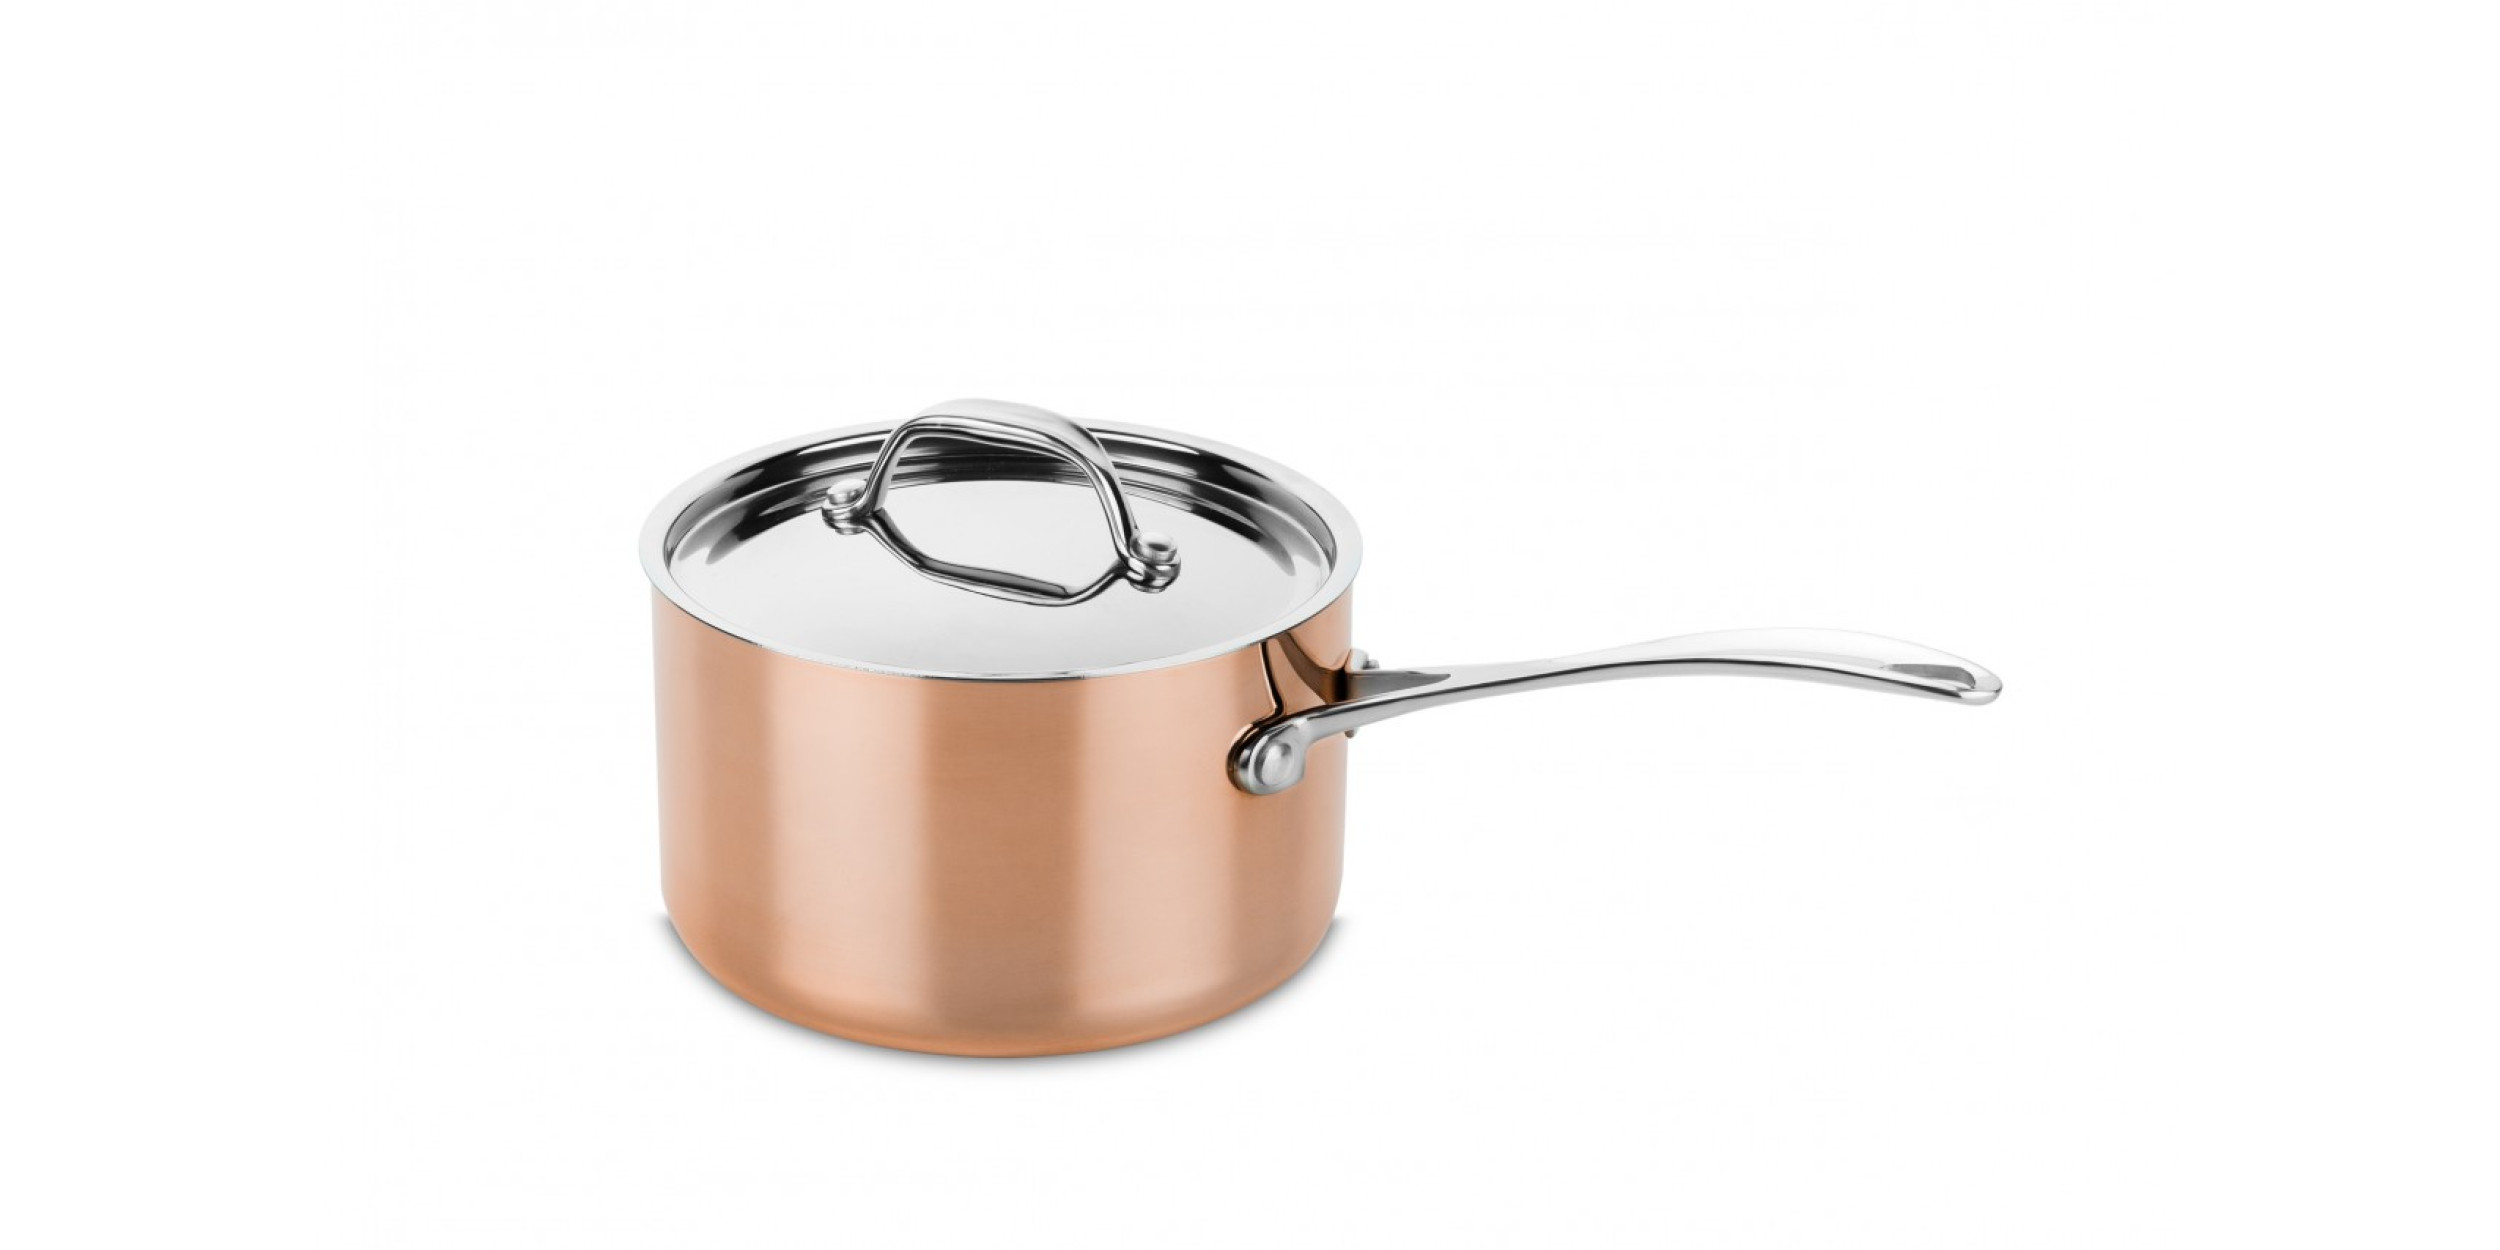 Copper casserole Ø 16 cm with pouring spout